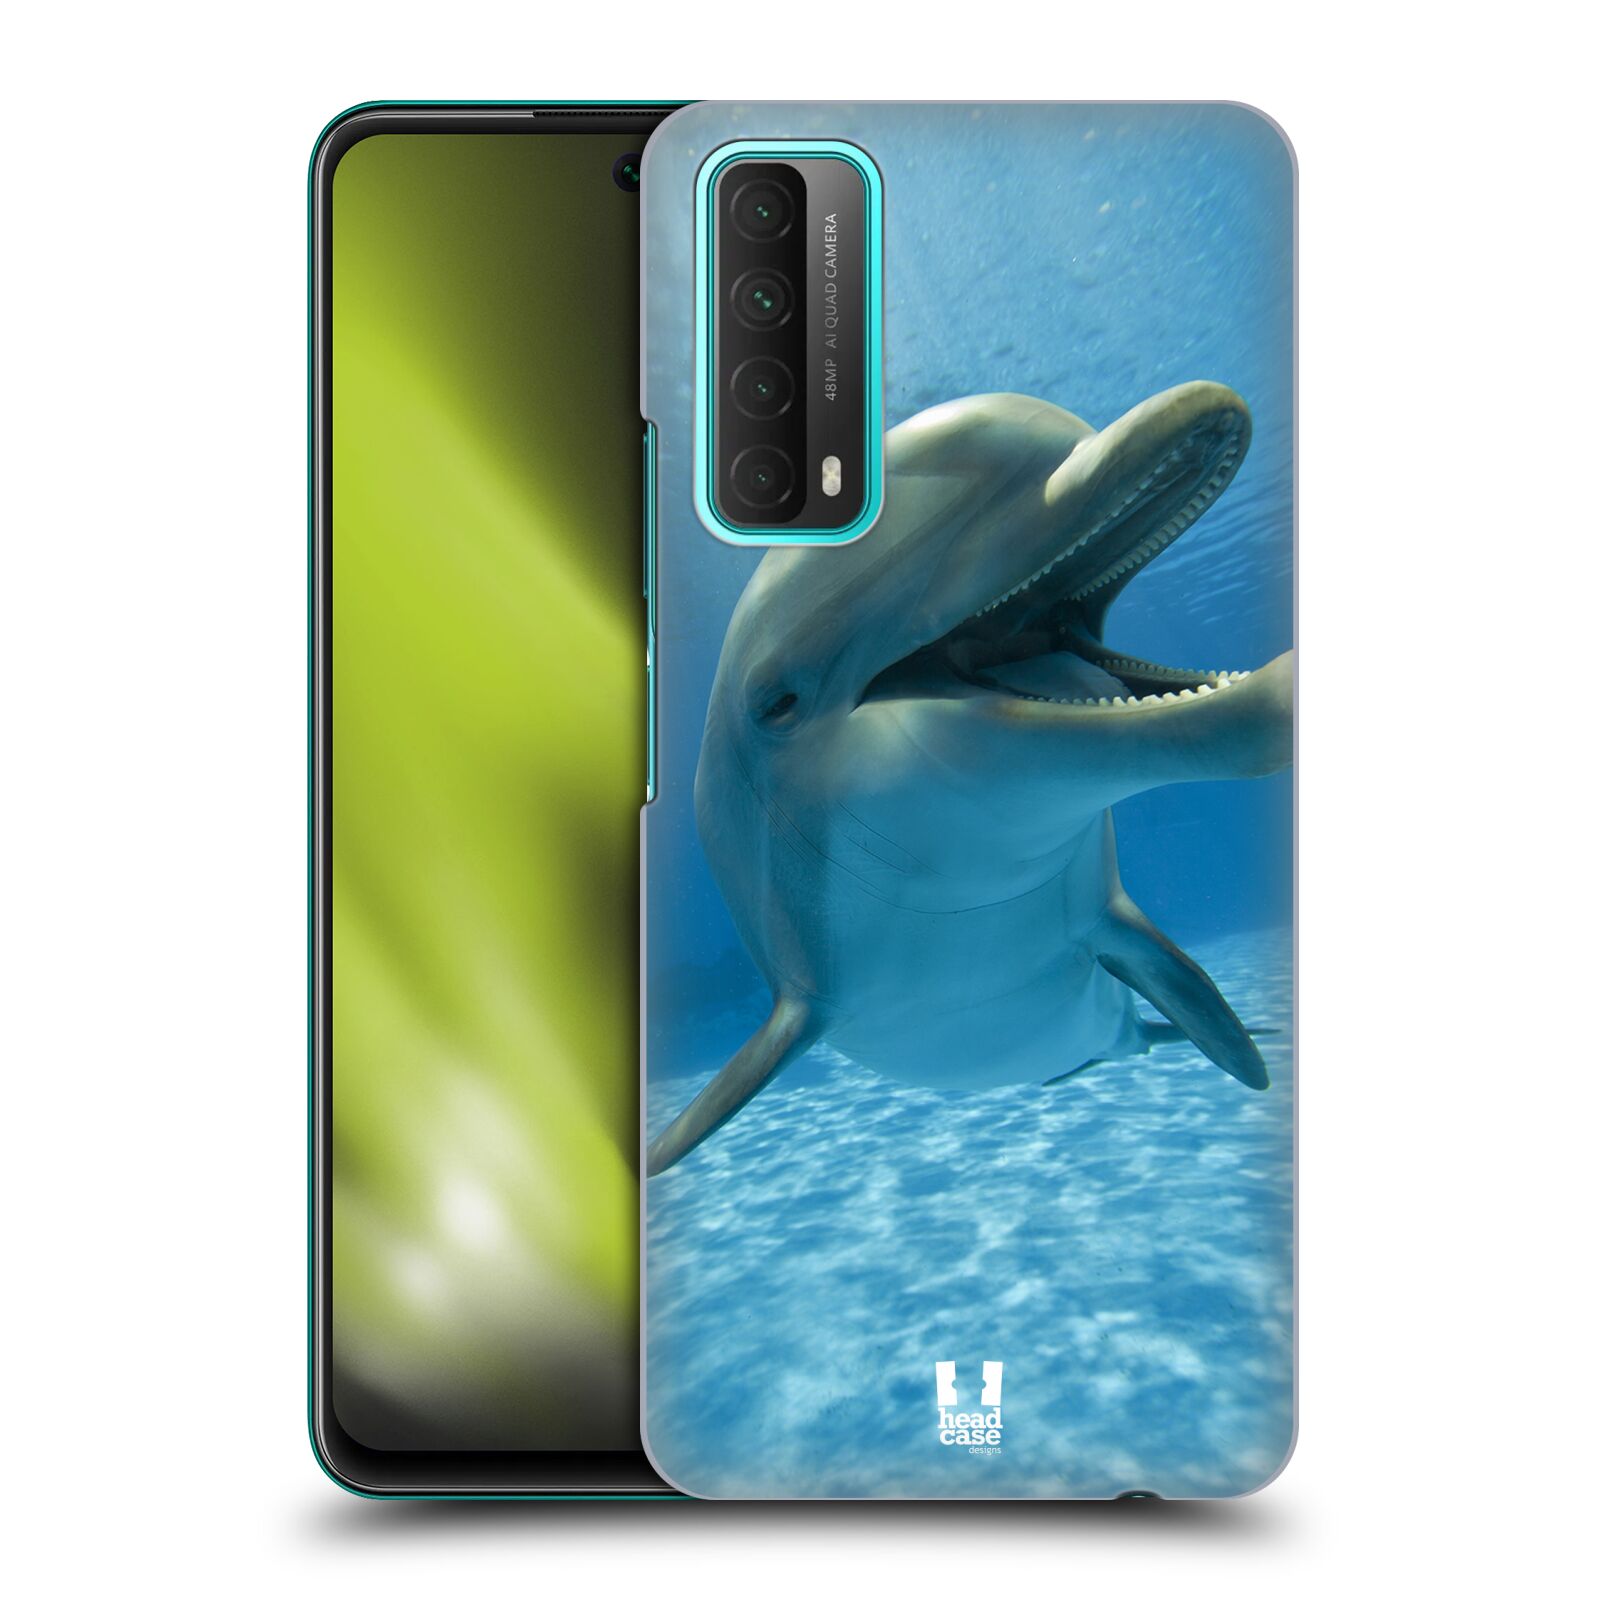 Zadní obal pro mobil Huawei P SMART 2021 - HEAD CASE - Svět zvířat delfín v moři